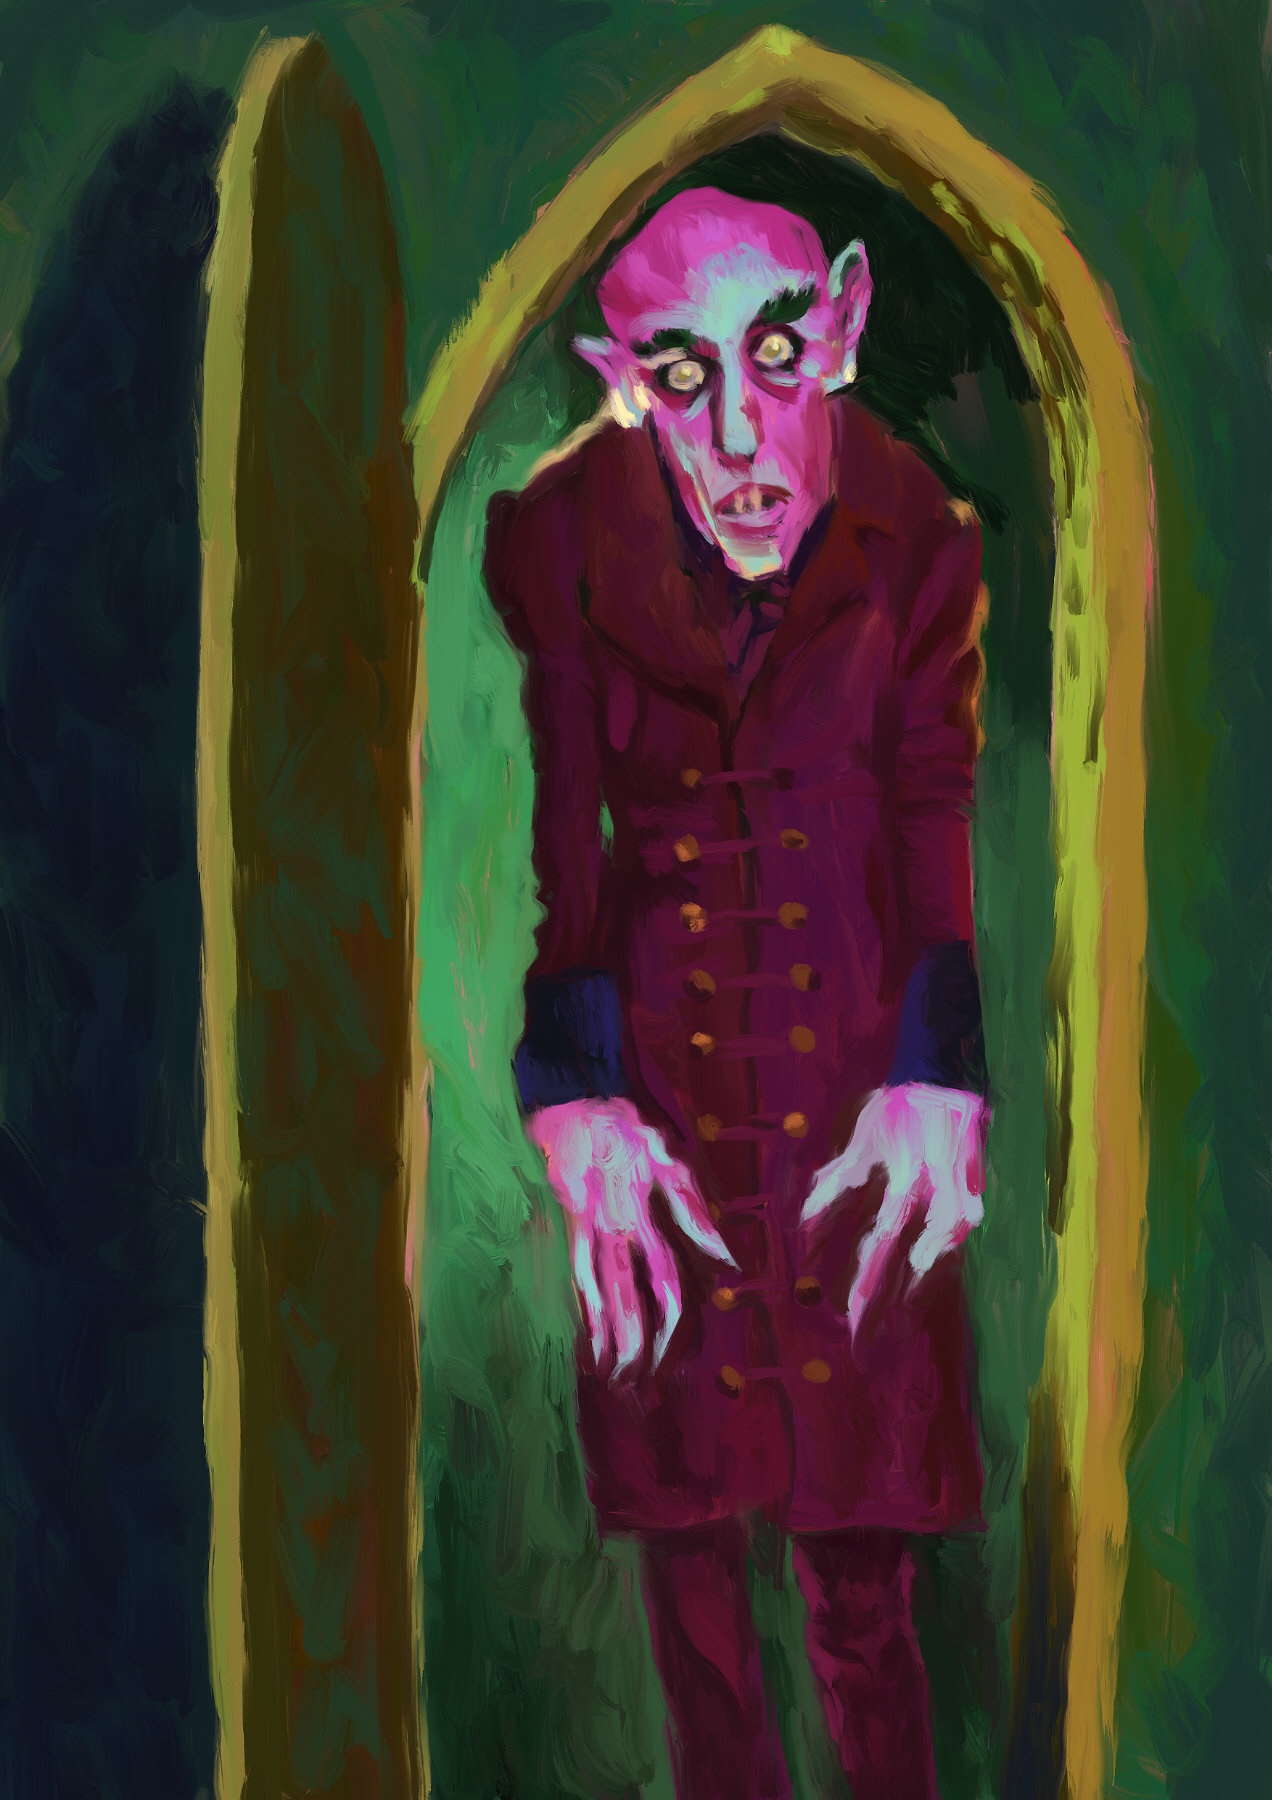 Pintura digital do personagem conde Orlok, do filme Nosferatu